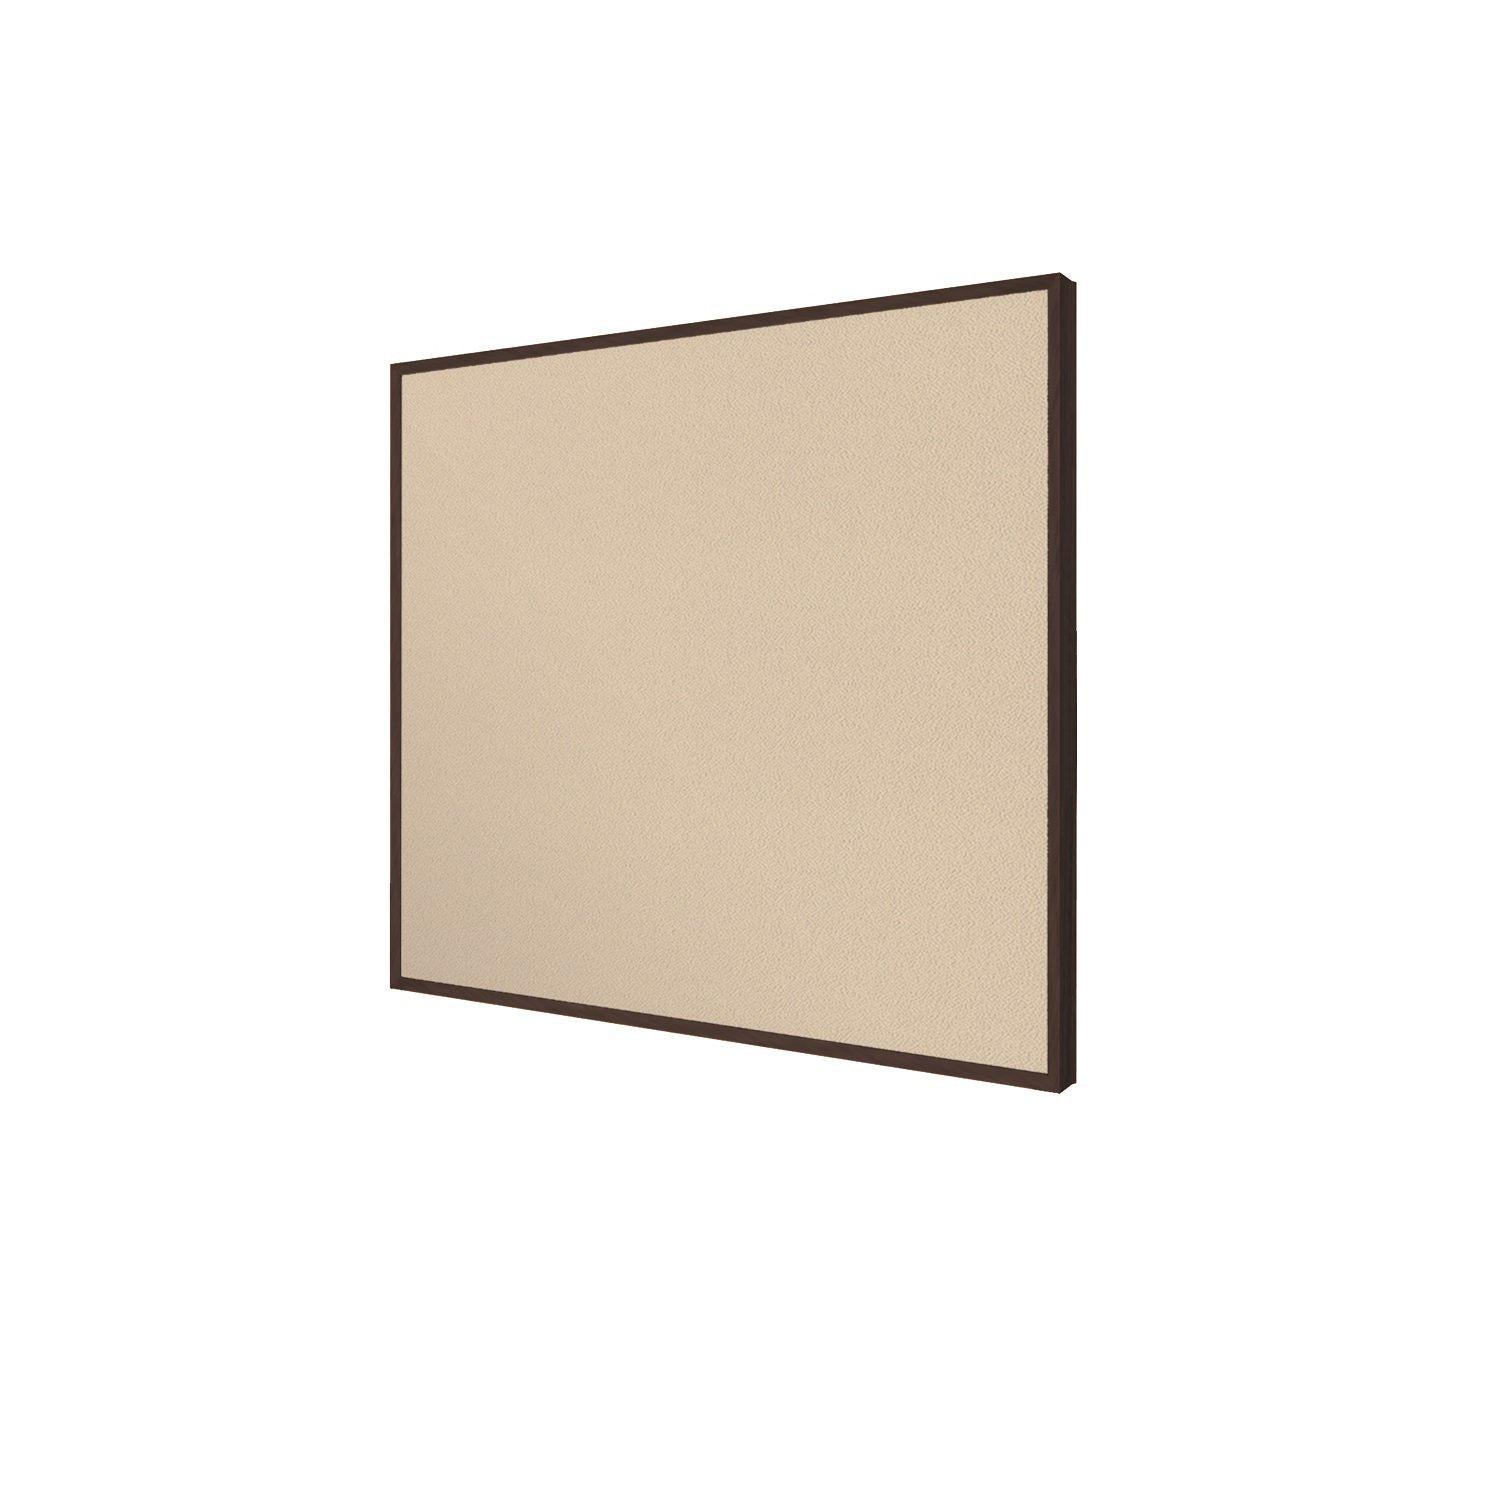 Impression Wood Framed Fabric Bulletin Board, 4' H x 5' W